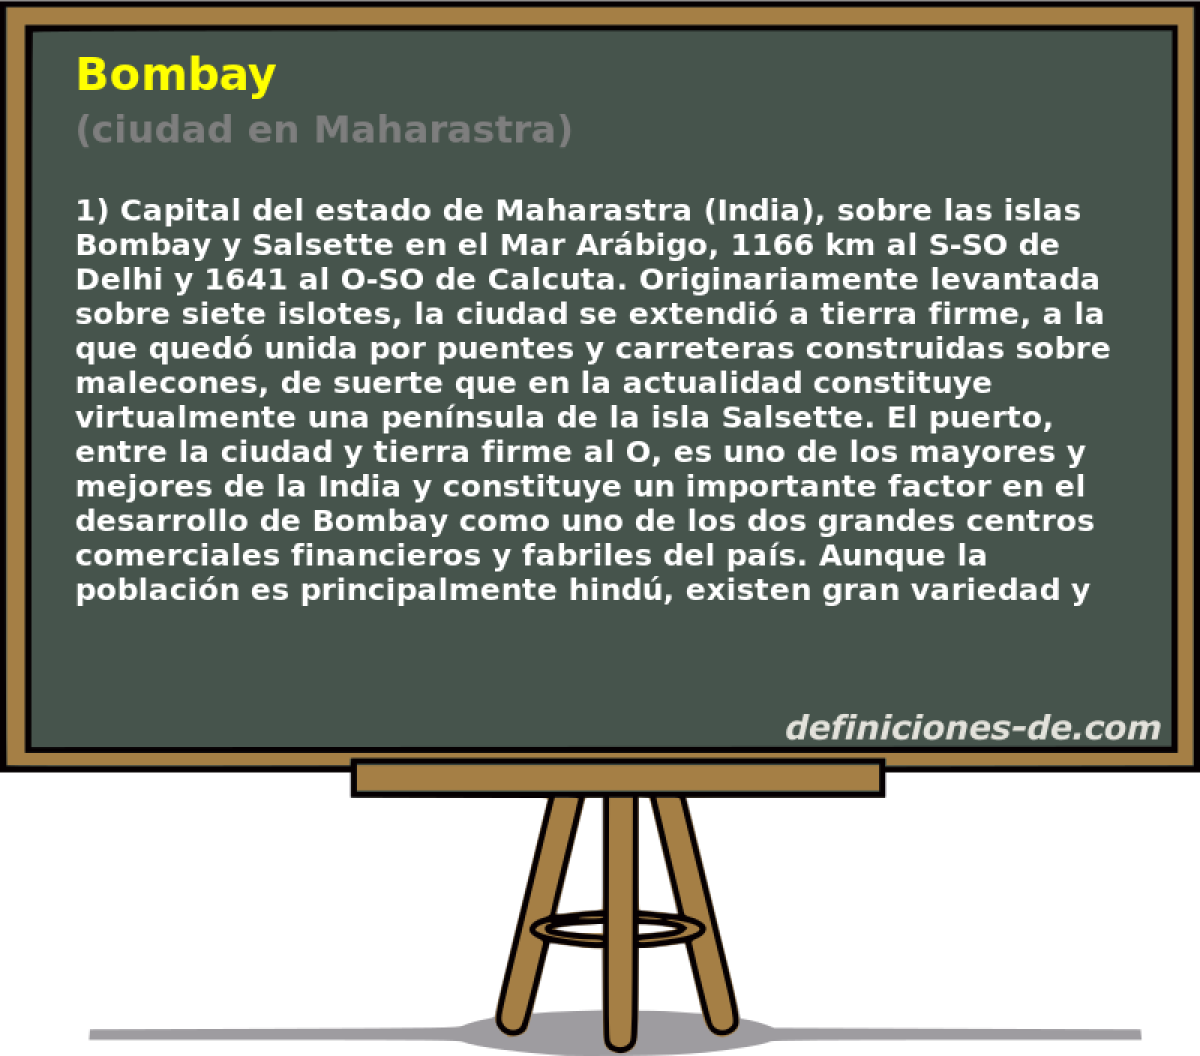 Bombay (ciudad en Maharastra)